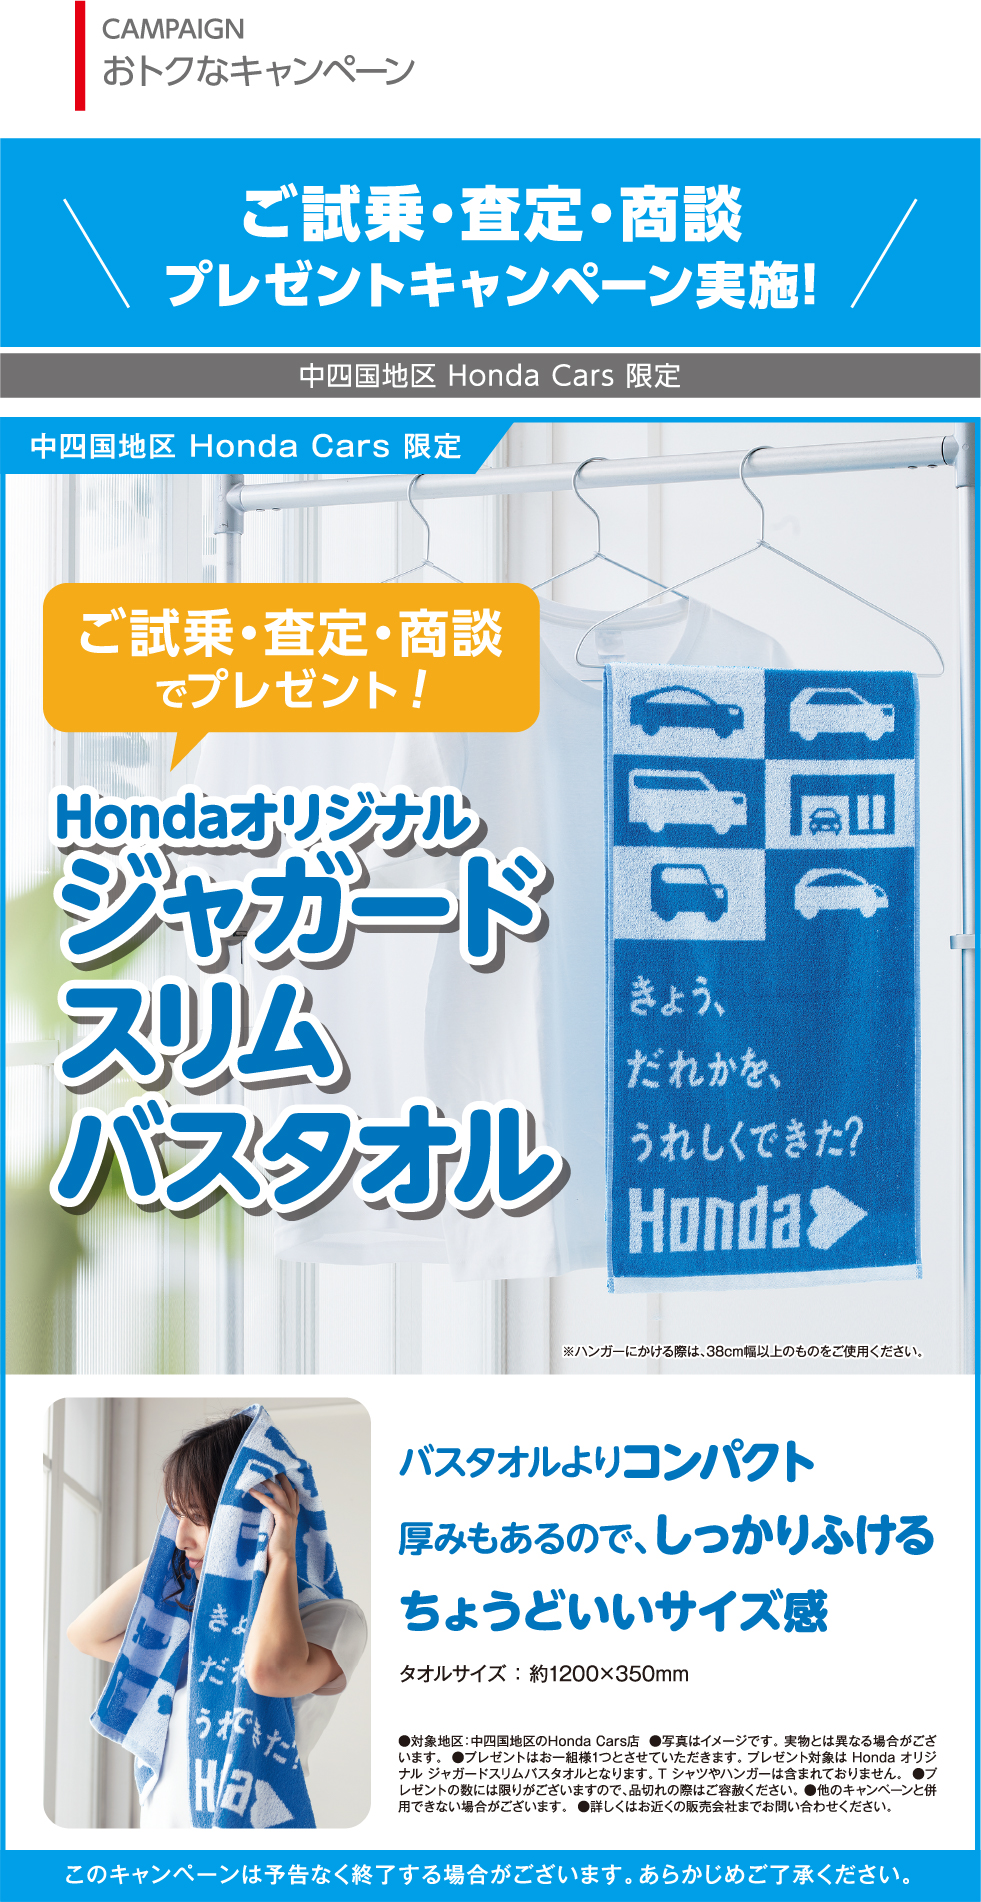 ご試乗・査定・商談Hondaオリジナルフェルト収納プレゼント